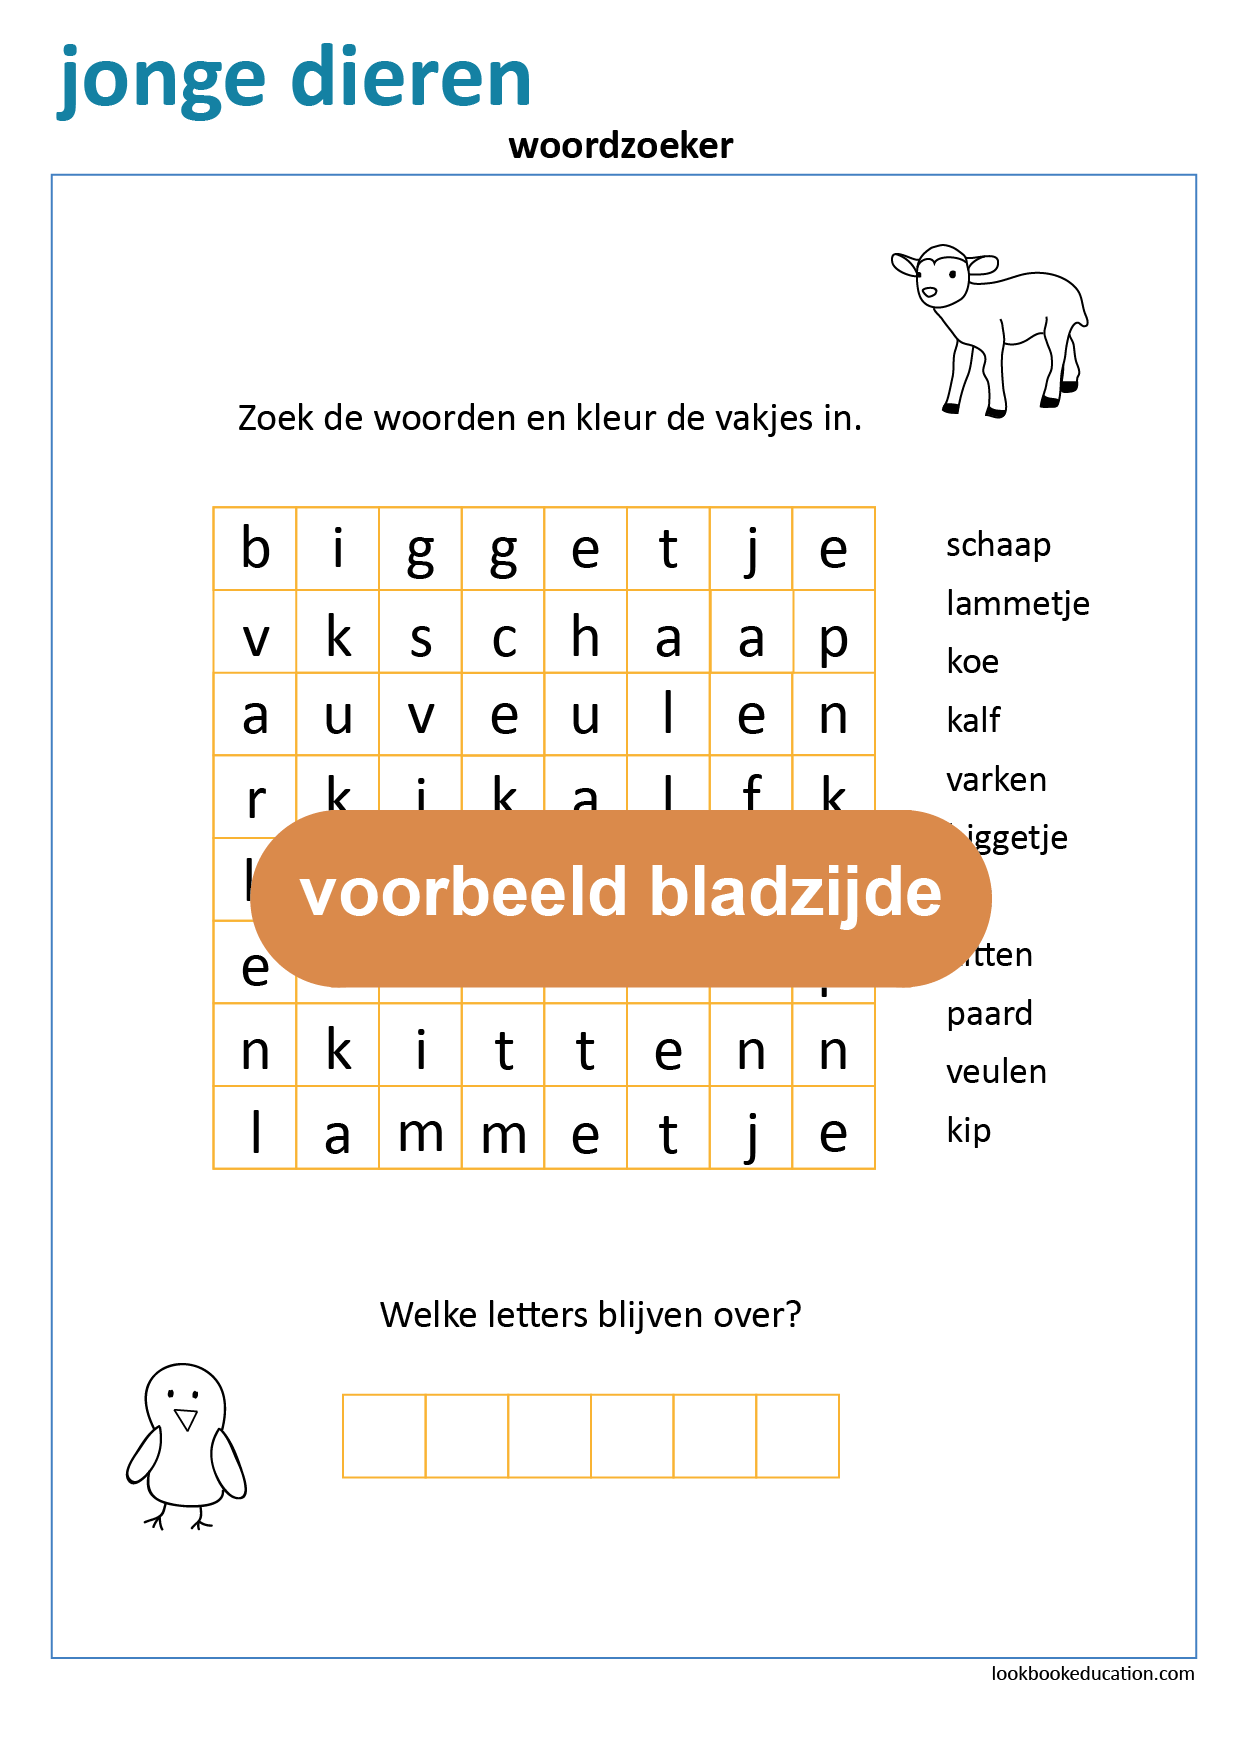 Cilia martelen Verlichten Werkblad Woordzoeker Jonge Dieren - Lookbook Education Nederland